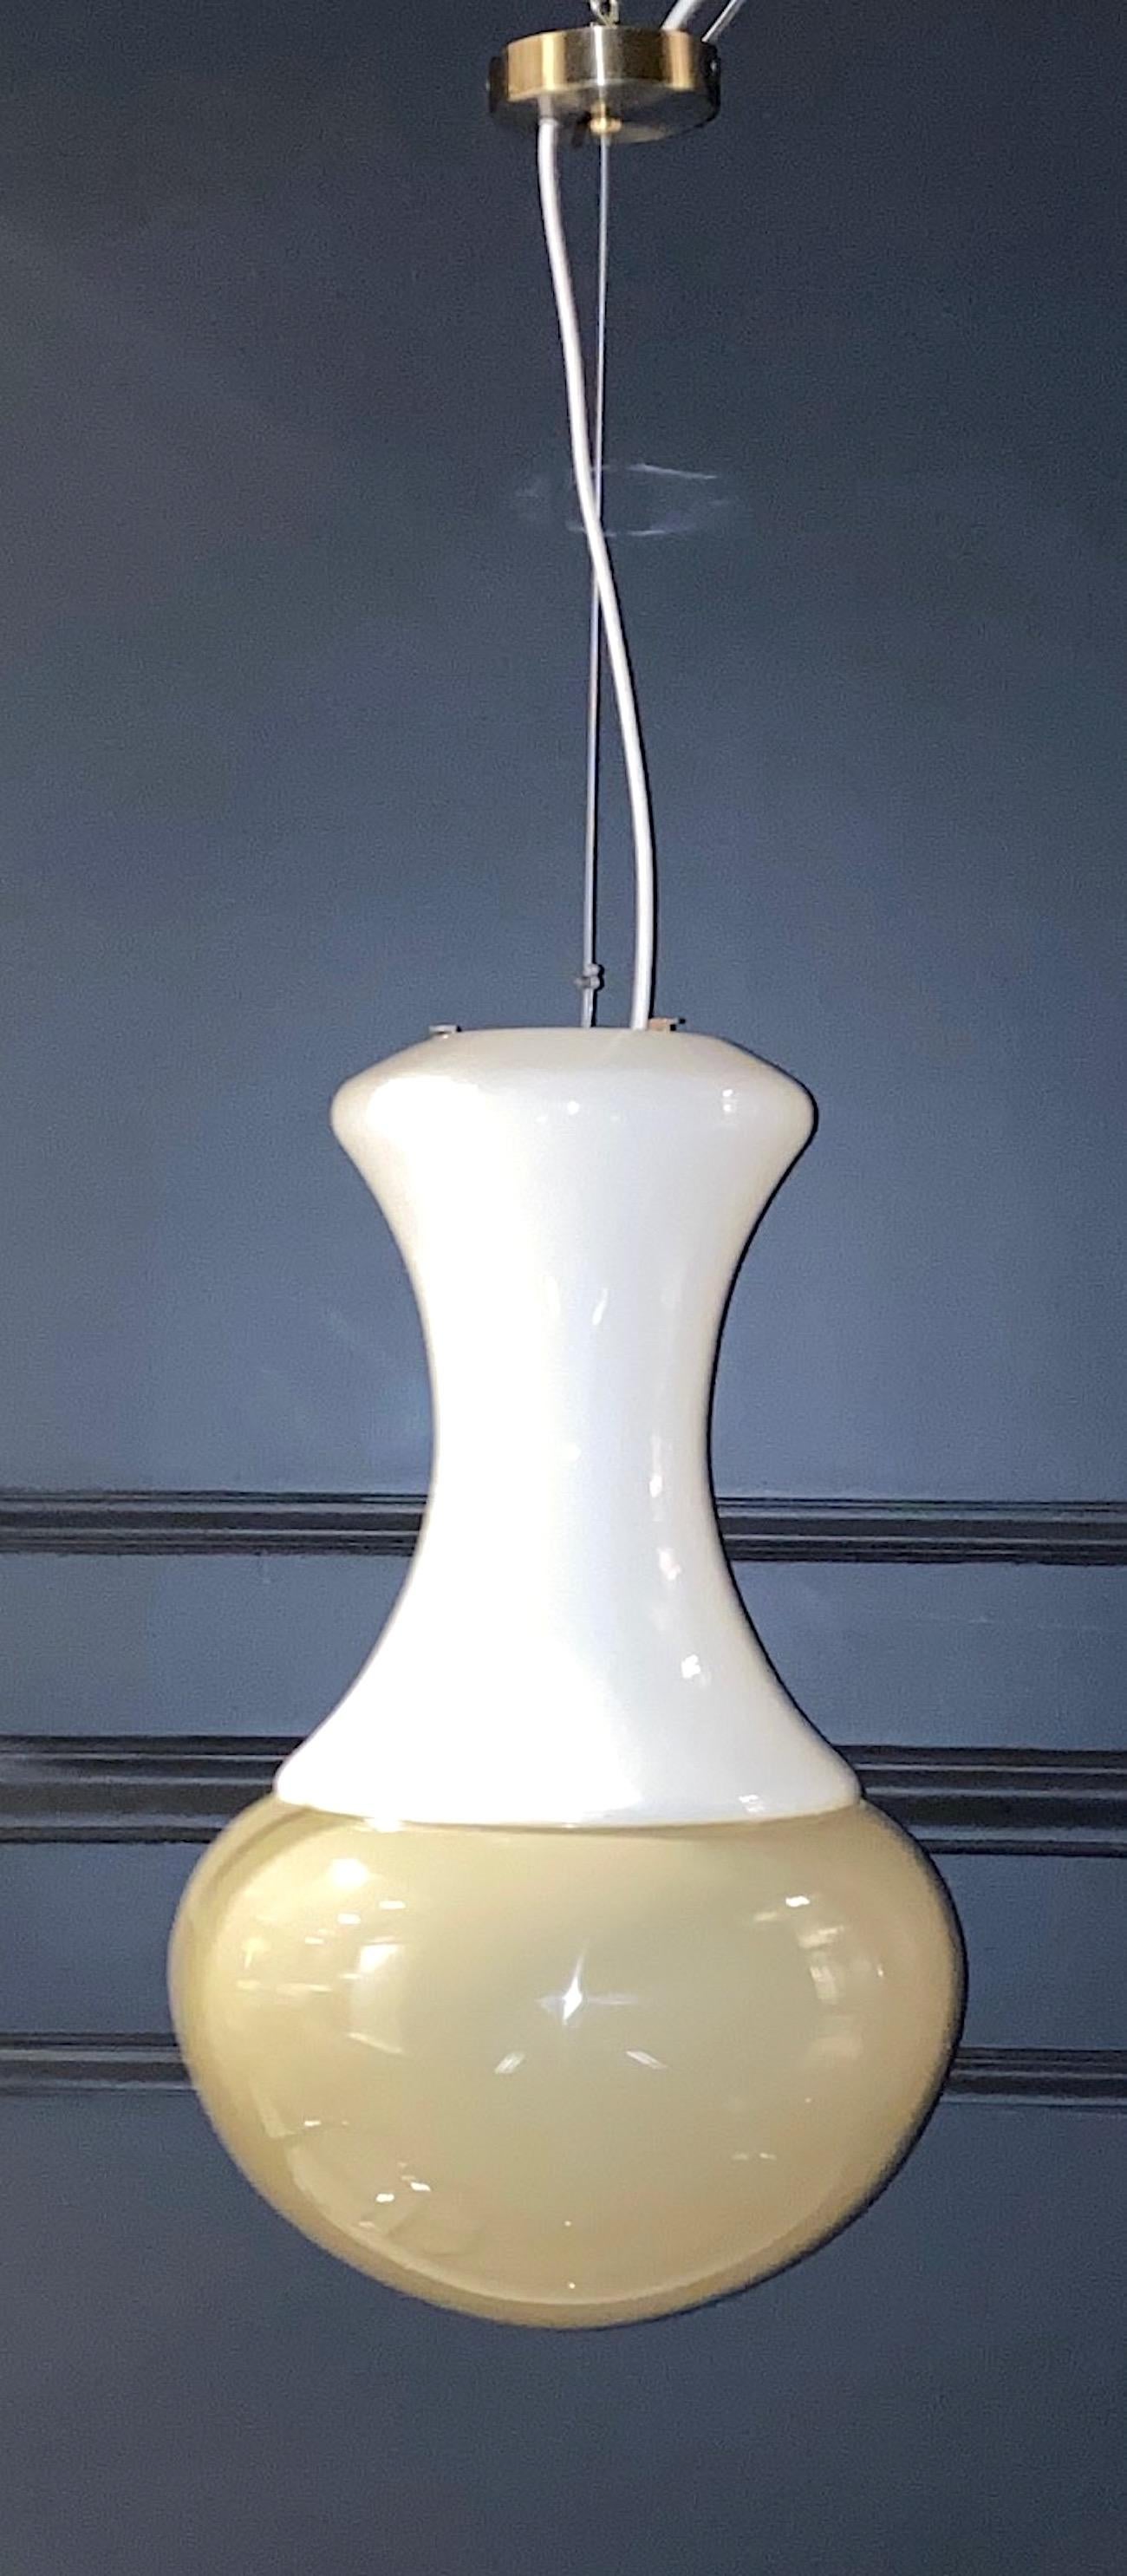 Une lampe pendante italienne au design épuré et élégant, vers 1970. Le pendentif est composé de deux pièces de verre soufflé à la main réalisées à Murano. Le haut est en verre blanc opaque et le bas est en verre opaque de couleur taupe/beige. Les